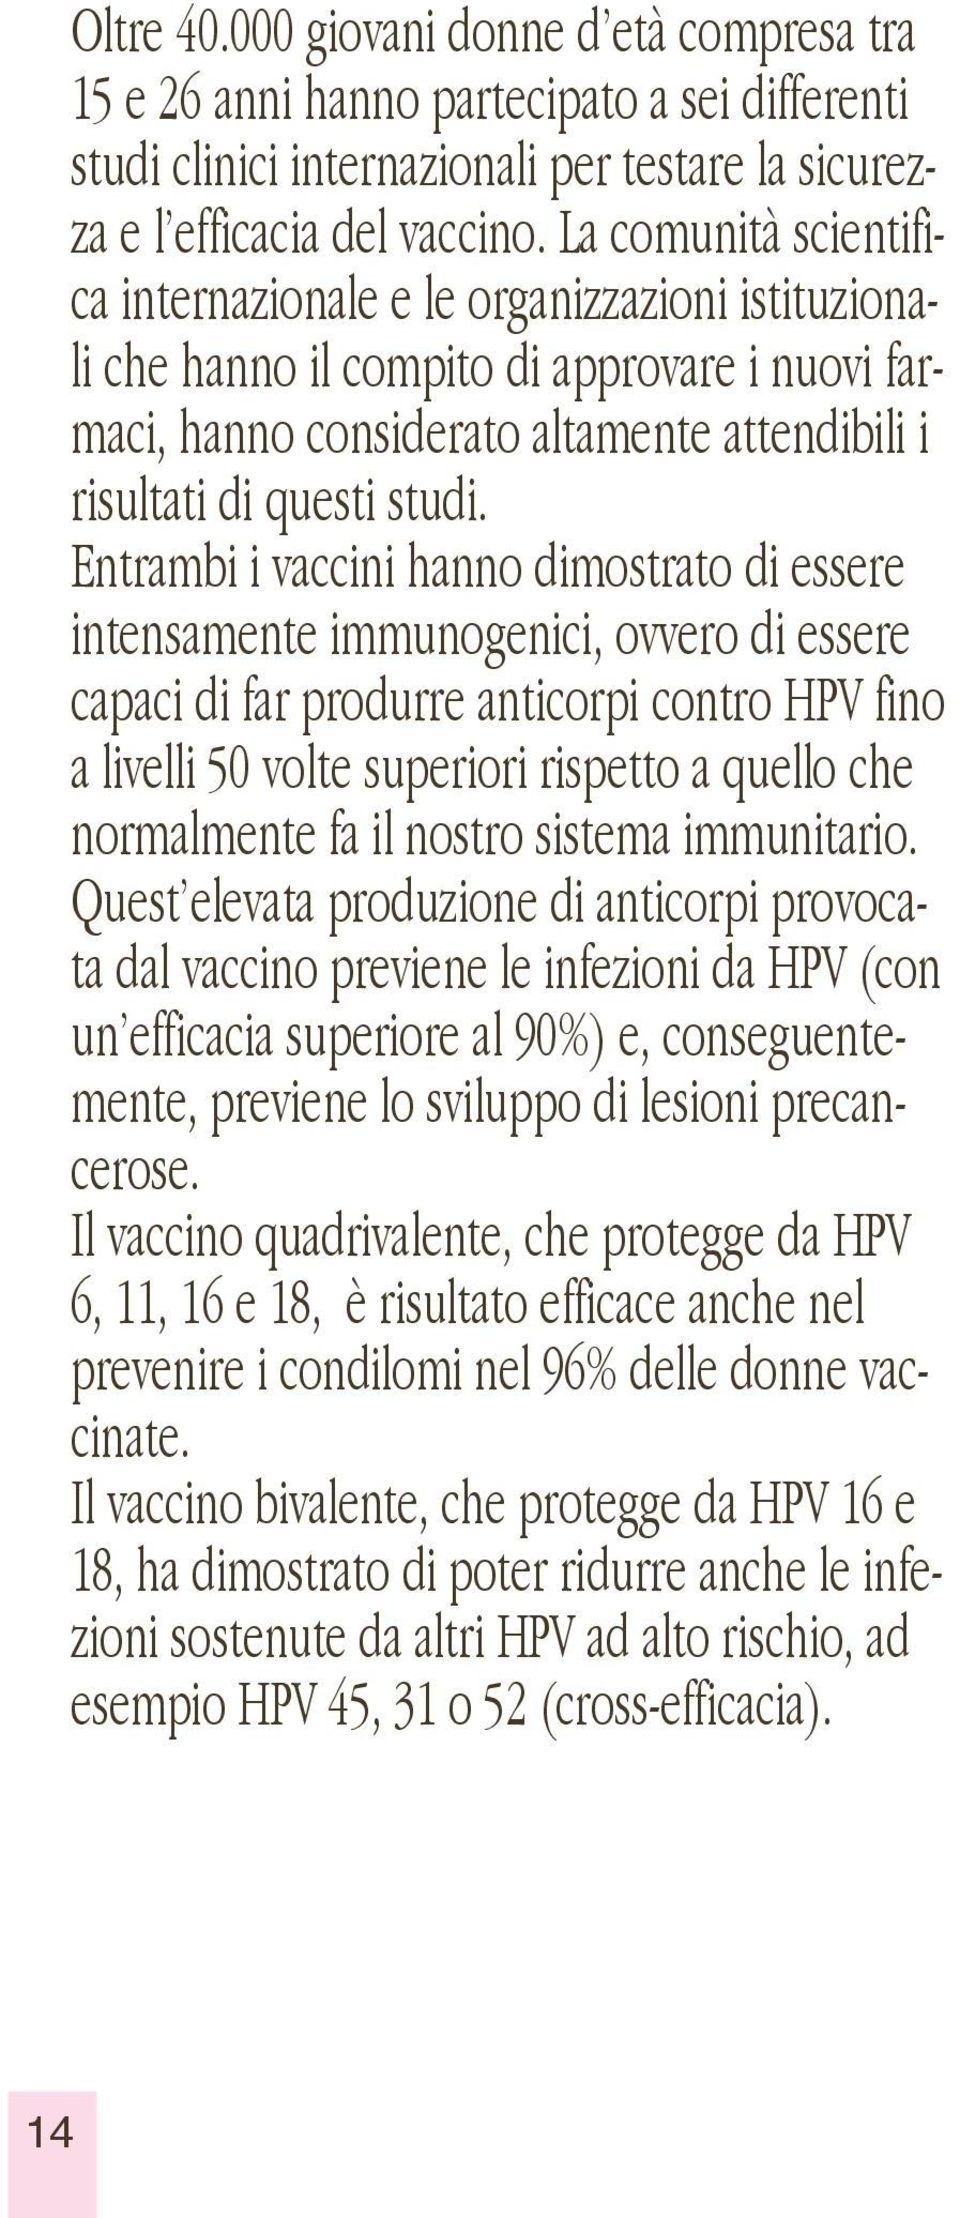 Entrambi i vaccini hanno dimostrato di essere intensamente immunogenici, ovvero di essere capaci di far produrre anticorpi contro HPV fino a livelli 50 volte superiori rispetto a quello che